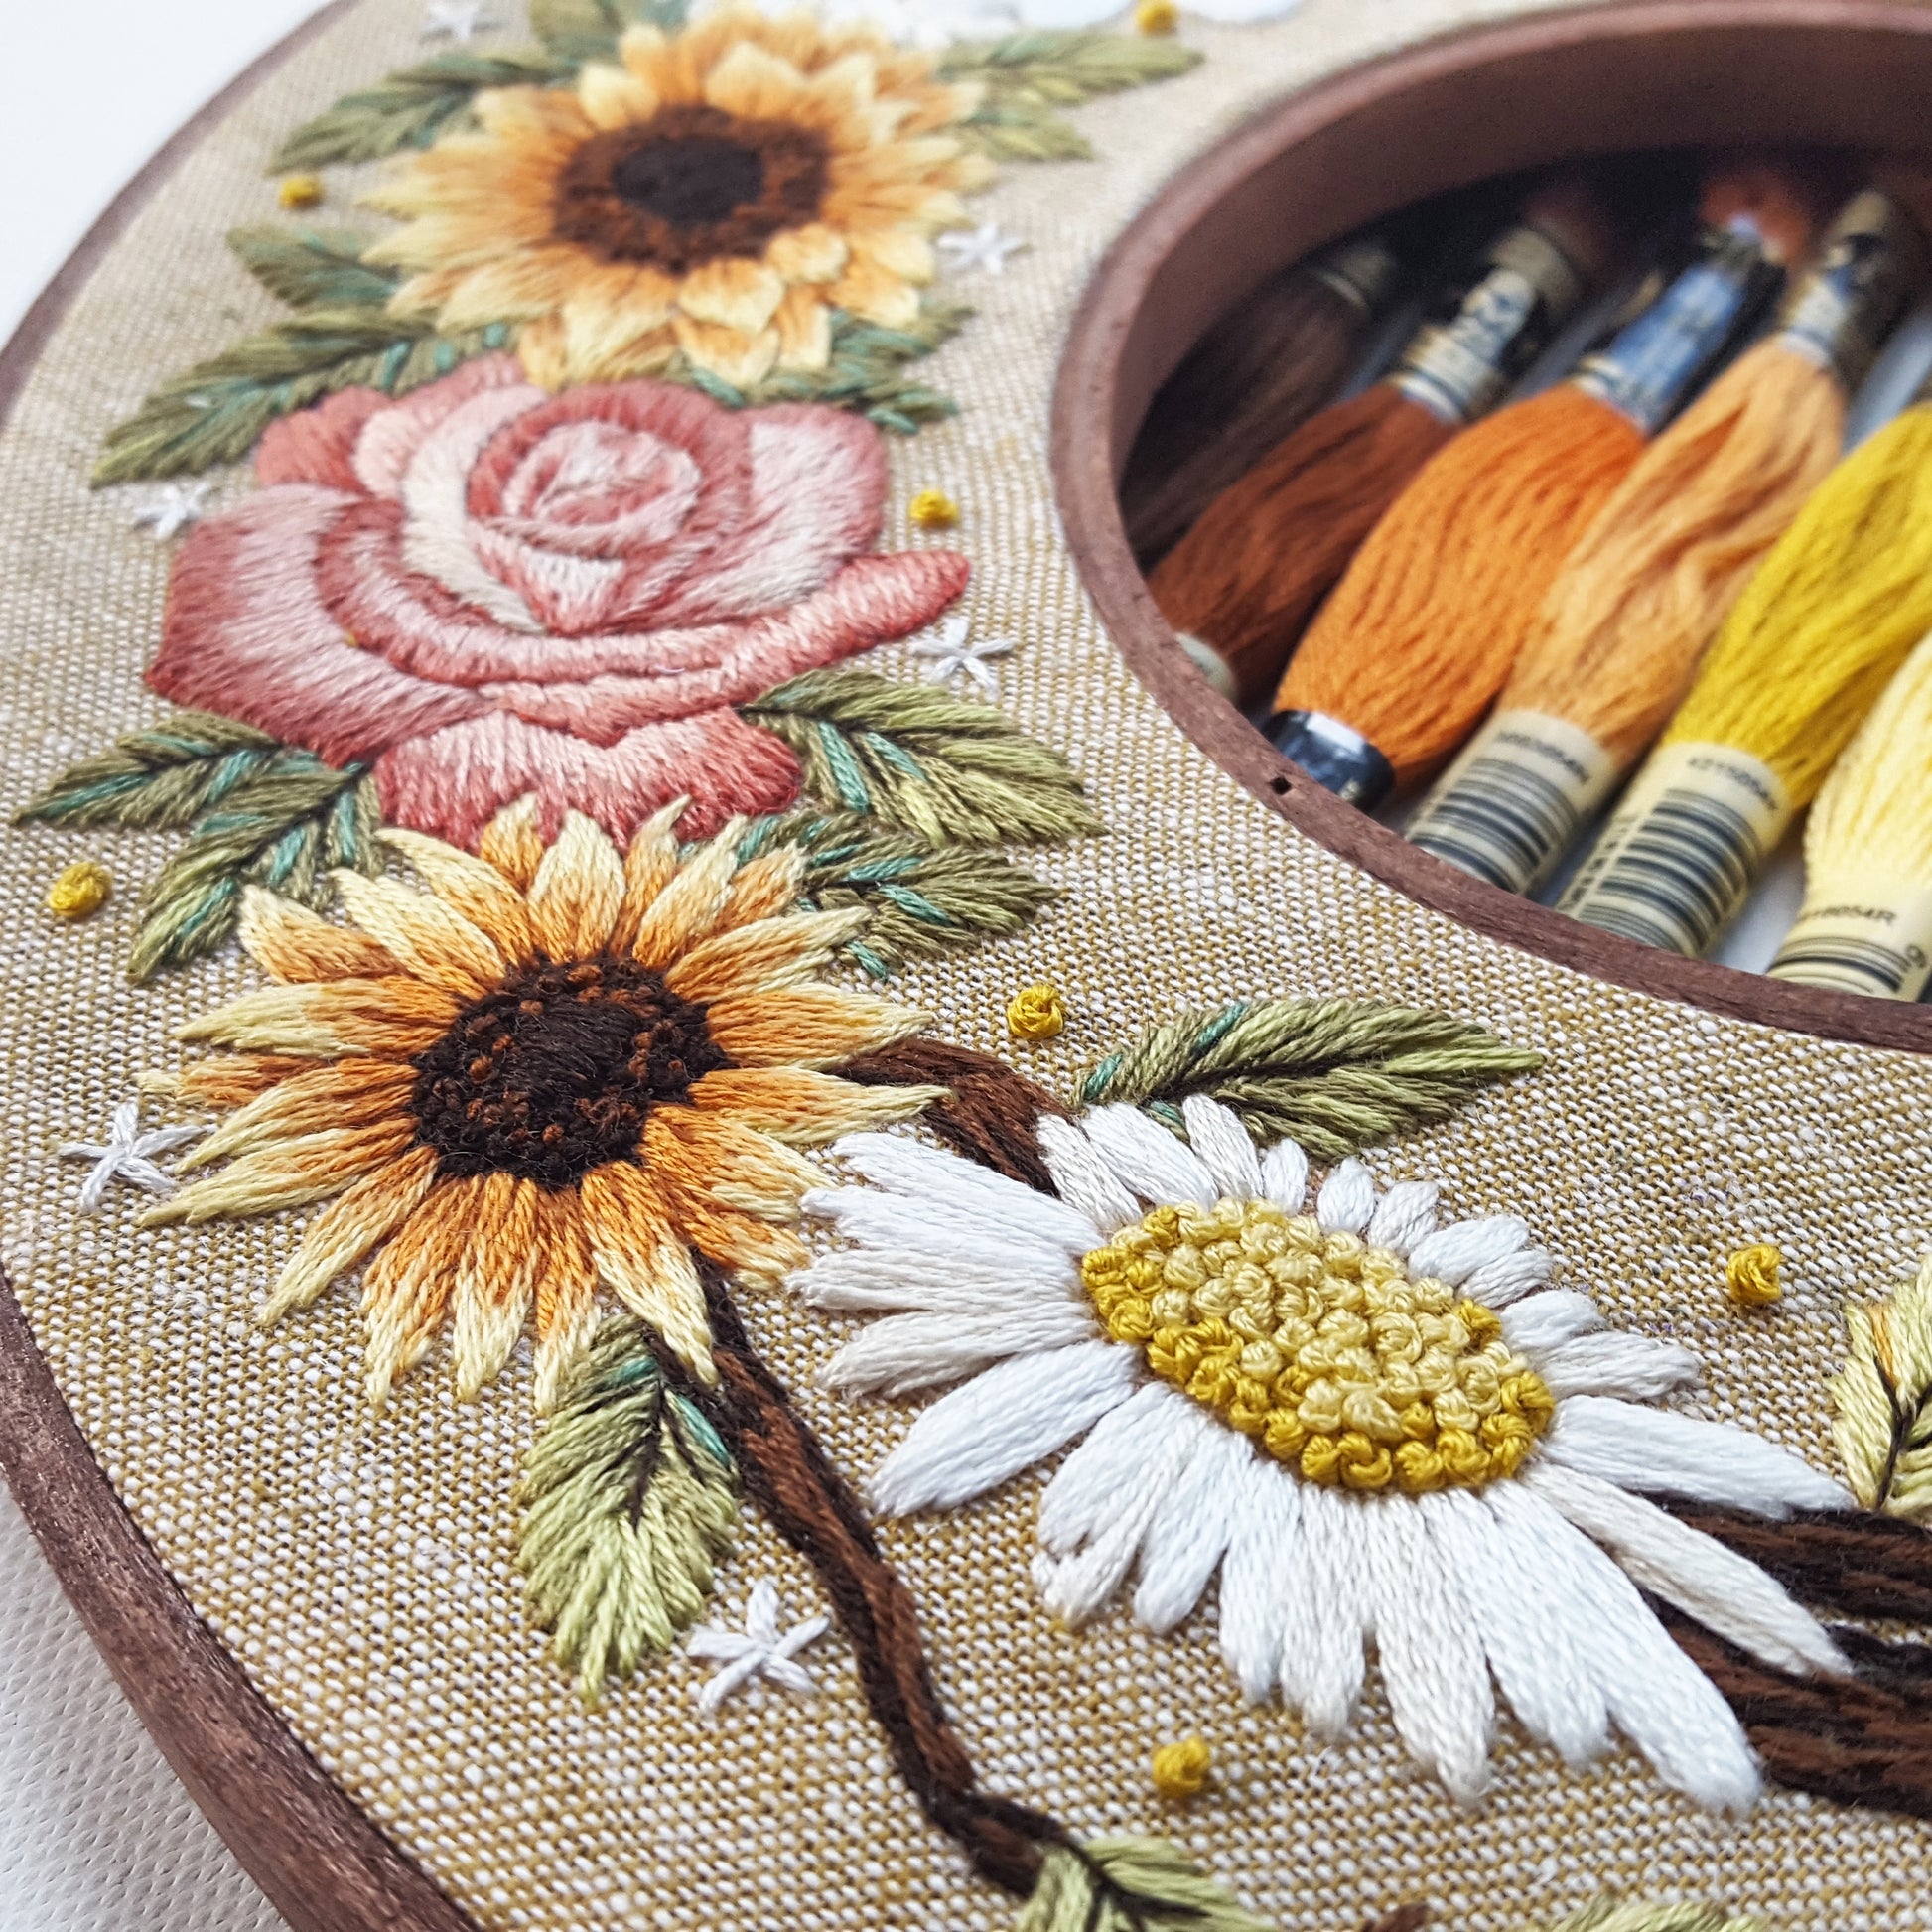 Darice 4” Embroidery Hoop